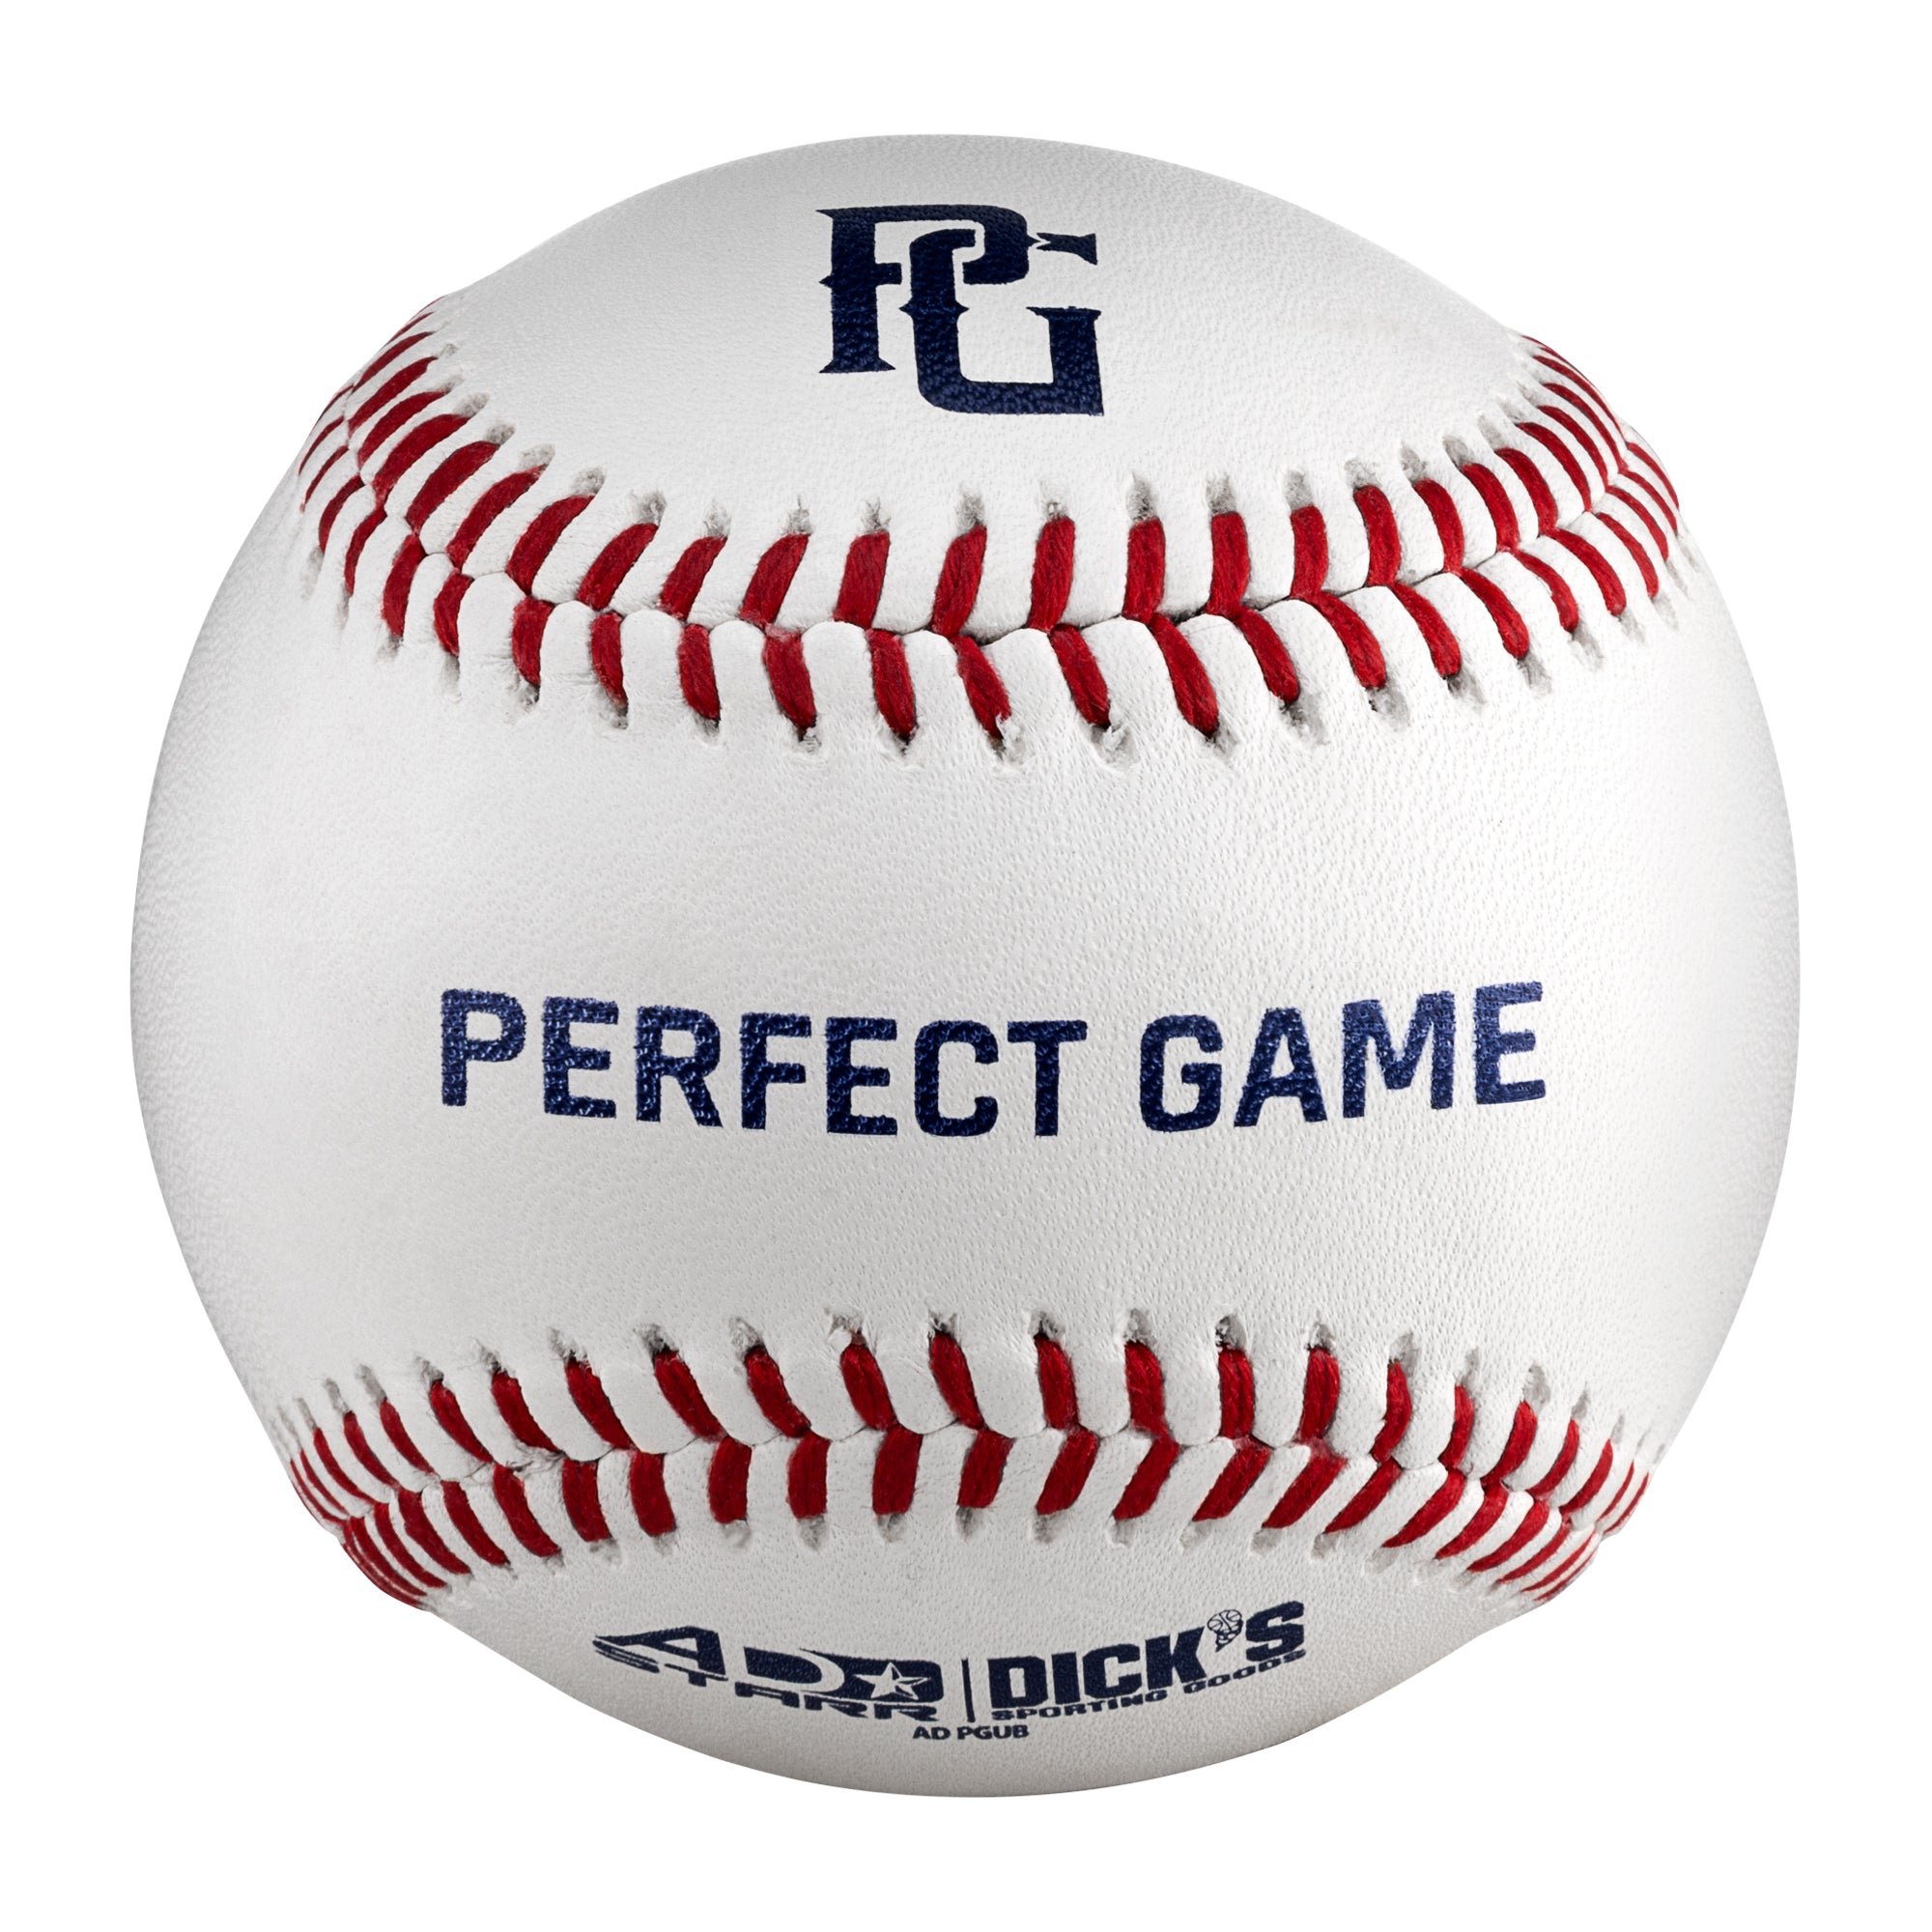 Demonstrere metan Recept Perfect Game Baseballs– Perfect Game Apparel